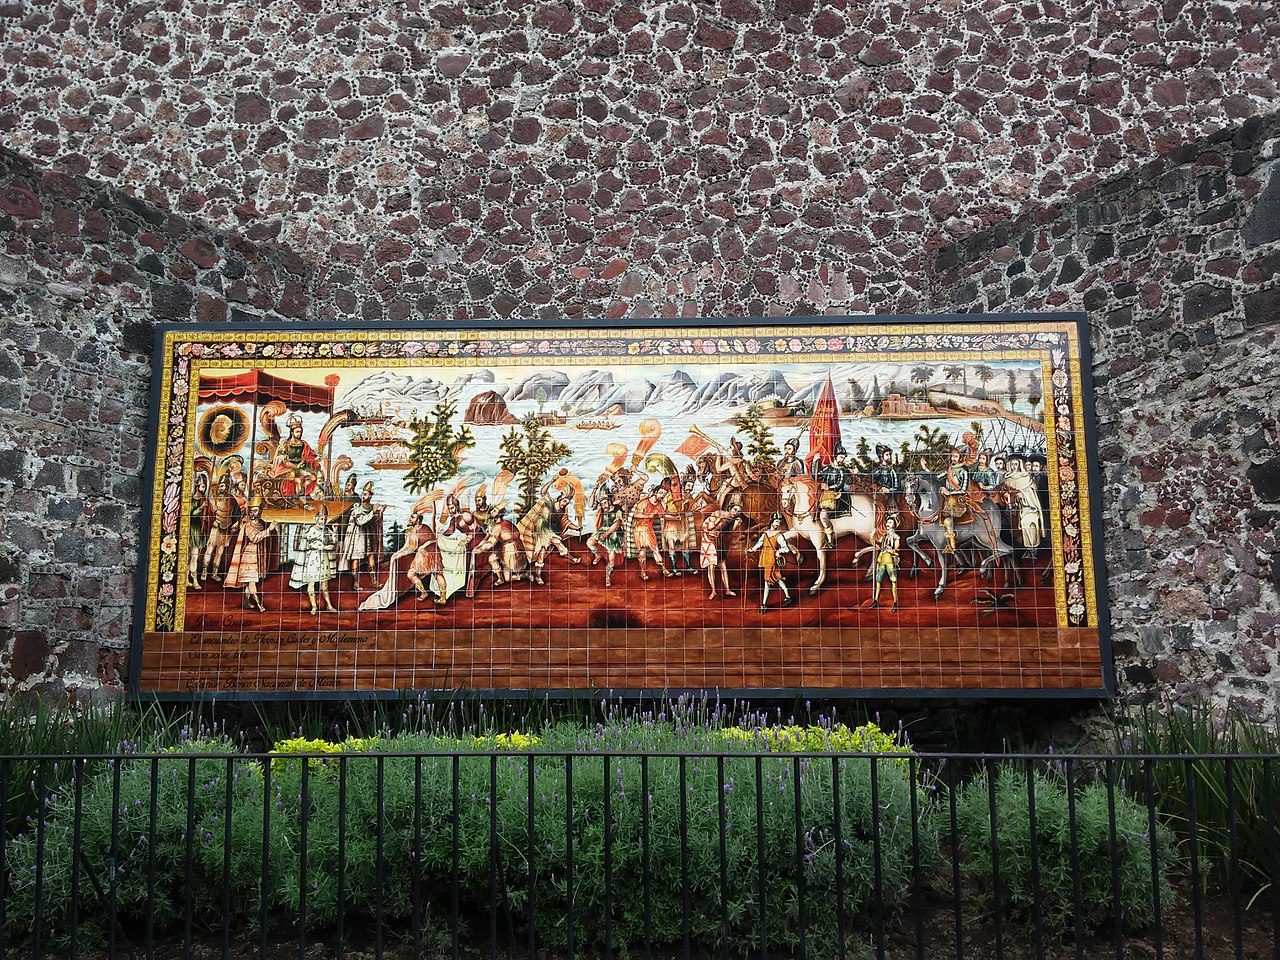 Mural of the Meeting of Moctezuma & Hernán Cortés